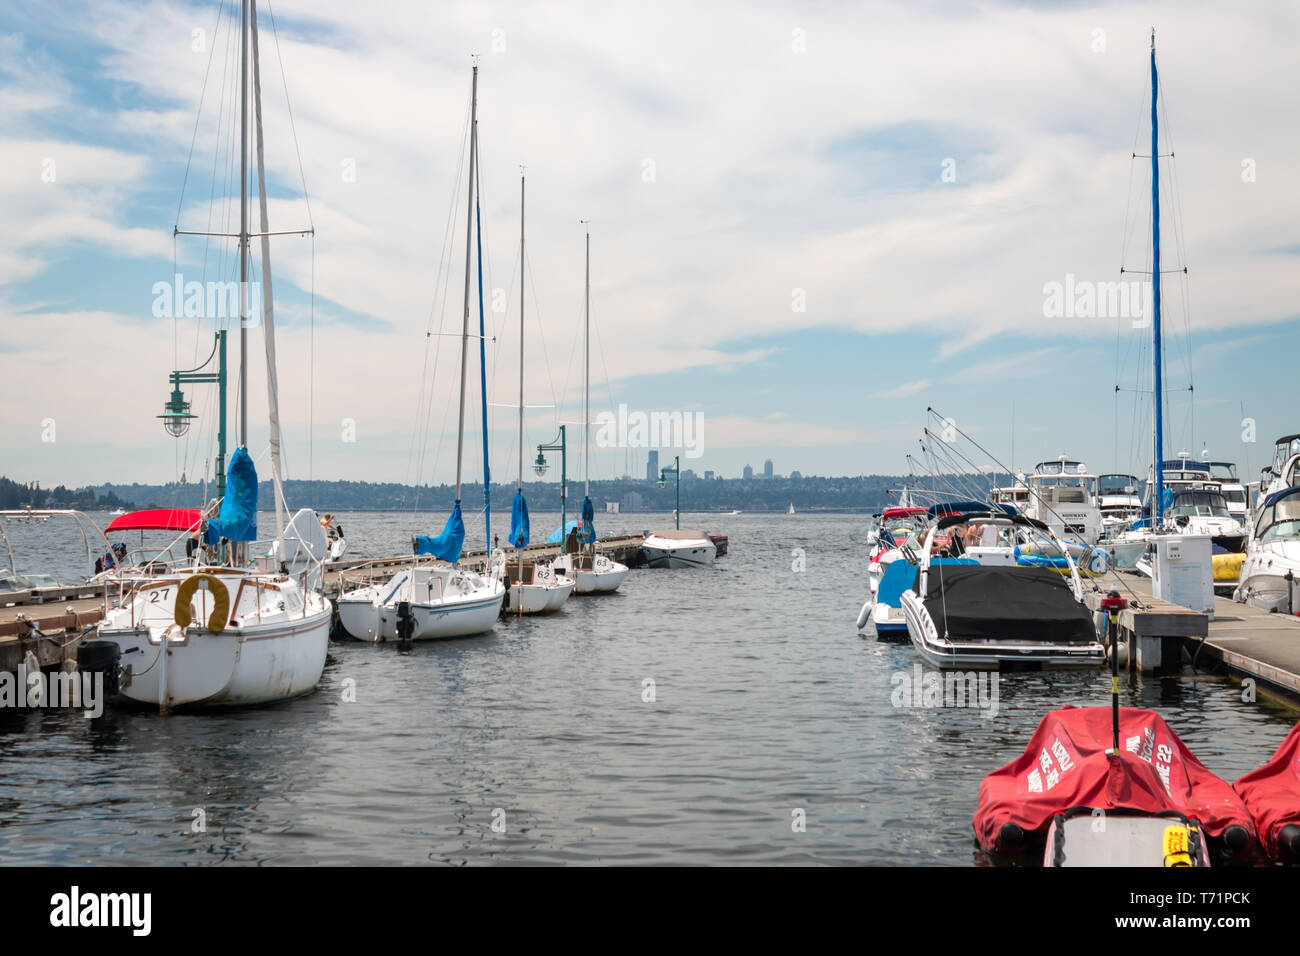 Pleasure boats and sailboats docked in Kirkland, Washington near Marina Park. Stock Photo